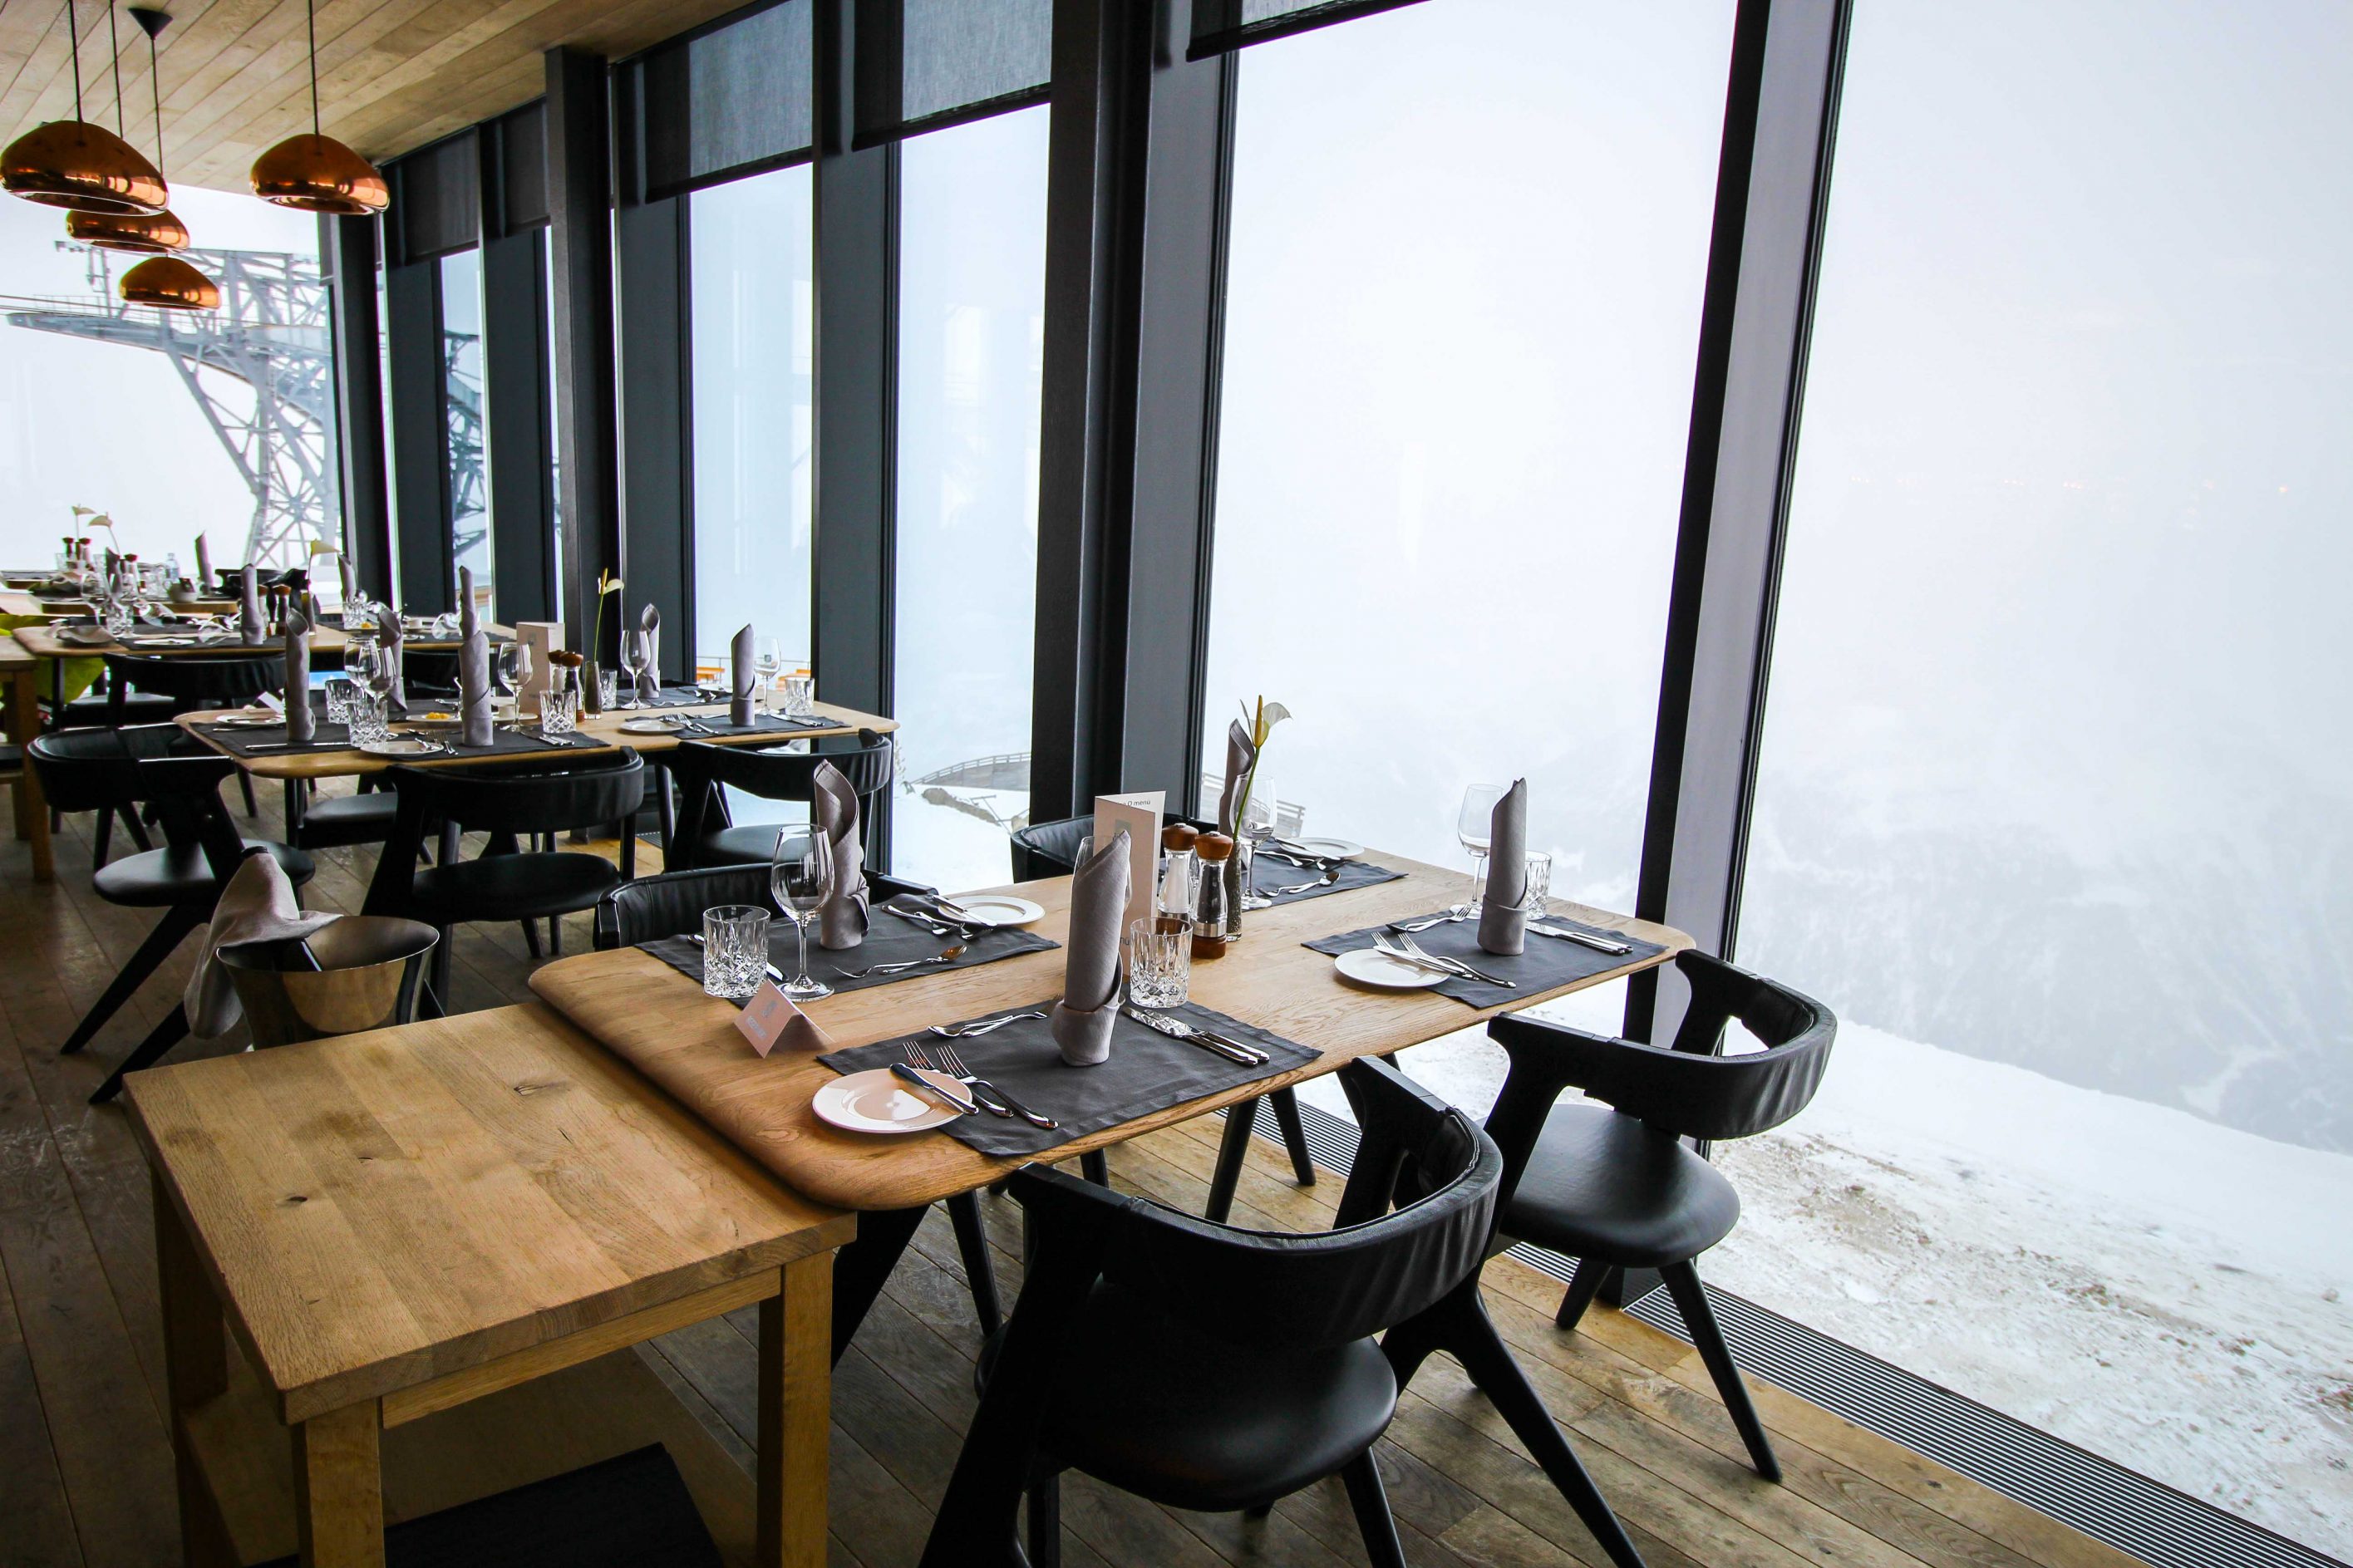 Gourmet-Restaurant Gipfelaussicht Tisch iceQ Sölden Tirol Österreich James Bond Location Spectre 3000m Gaislachkogl Reiseblog Inneneinrichtung